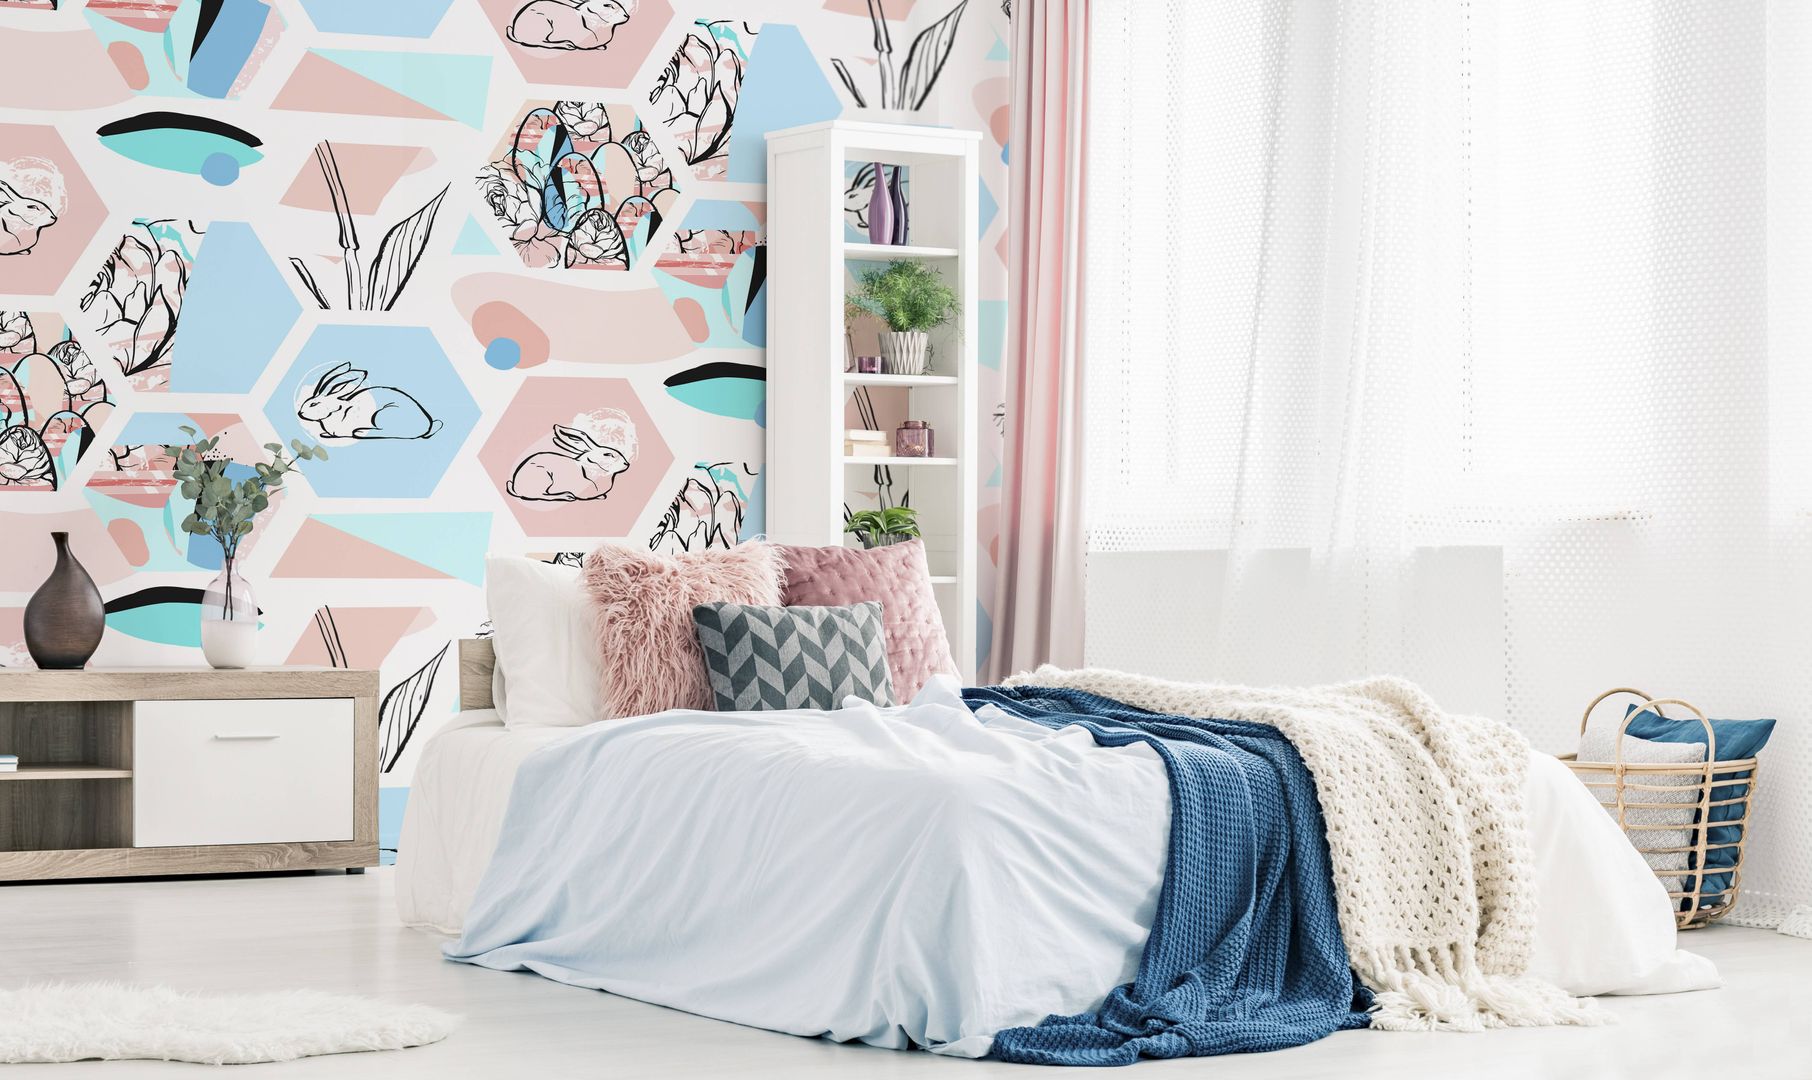 PASTEL EASTER Pixers Cuartos de estilo escandinavo easter,bedroom,pastel colors